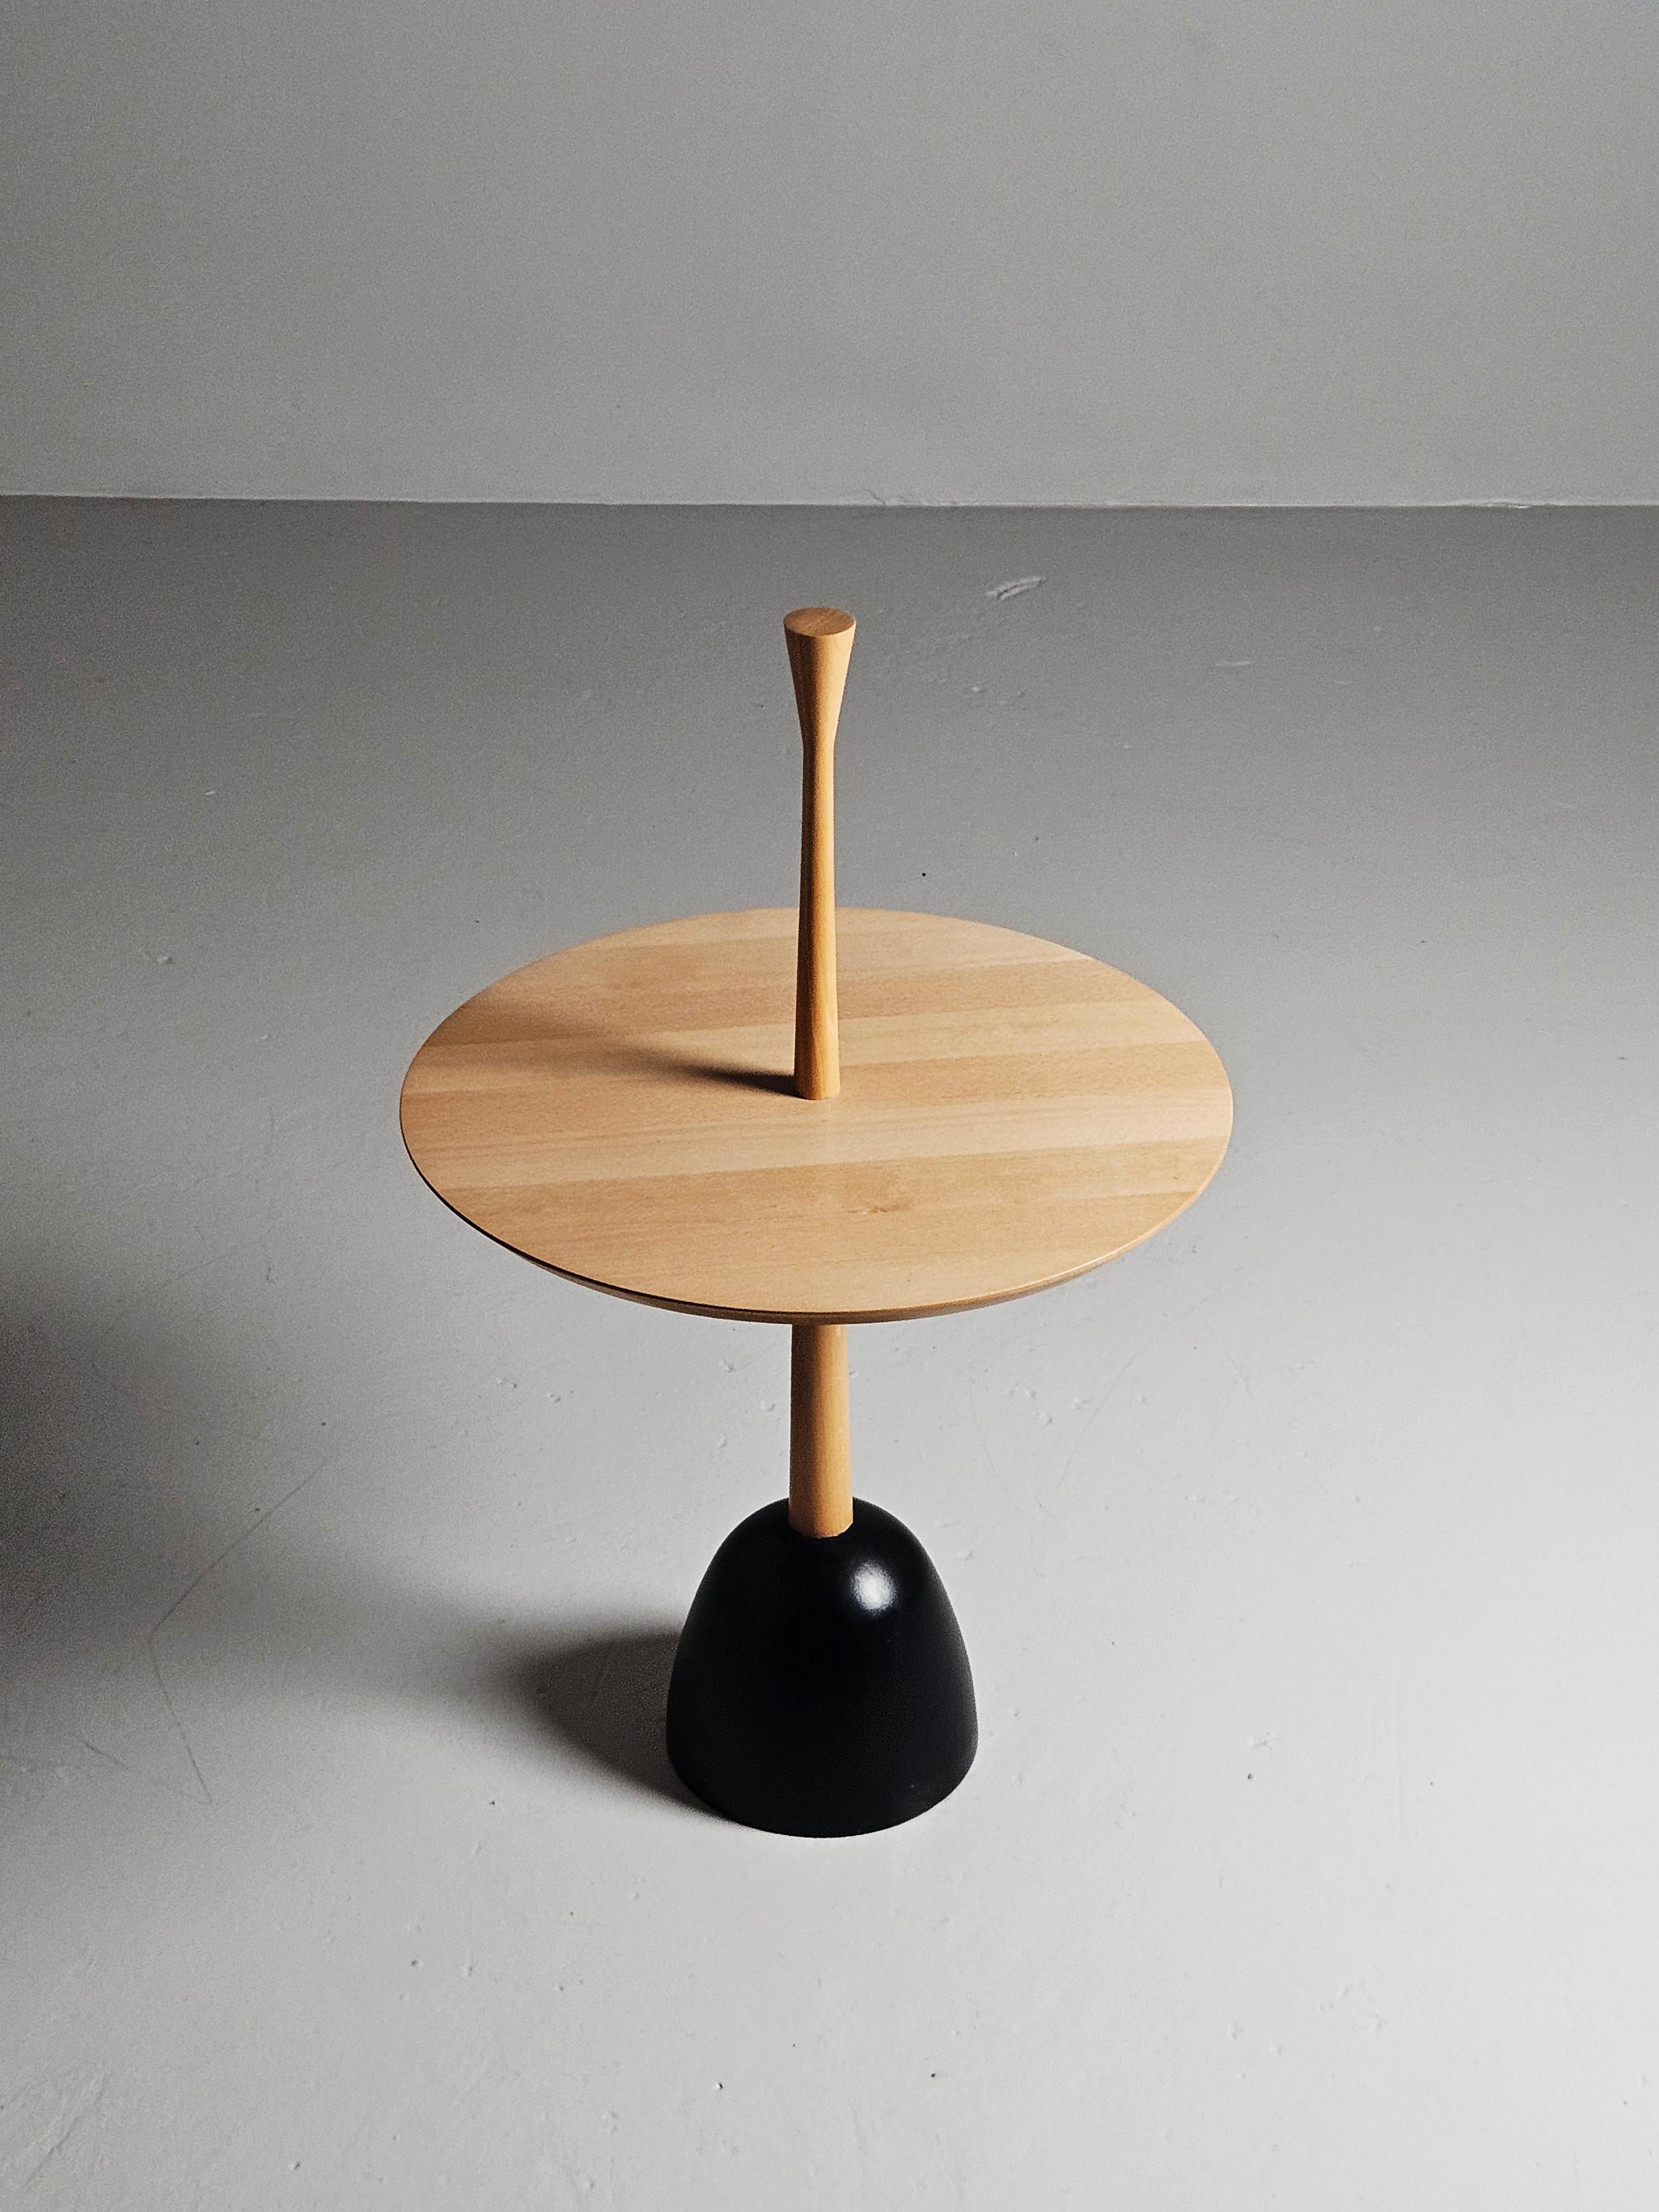 Couchtisch, hergestellt von Haslev in Dänemark in den 1960er Jahren.

Hergestellt aus massiver Eiche, montiert auf einem Fuß aus Gusseisen. Die Tischplatte ist um die Säule drehbar. 

Die Gesamthöhe mit Säule beträgt 31,10 in(79cm).

